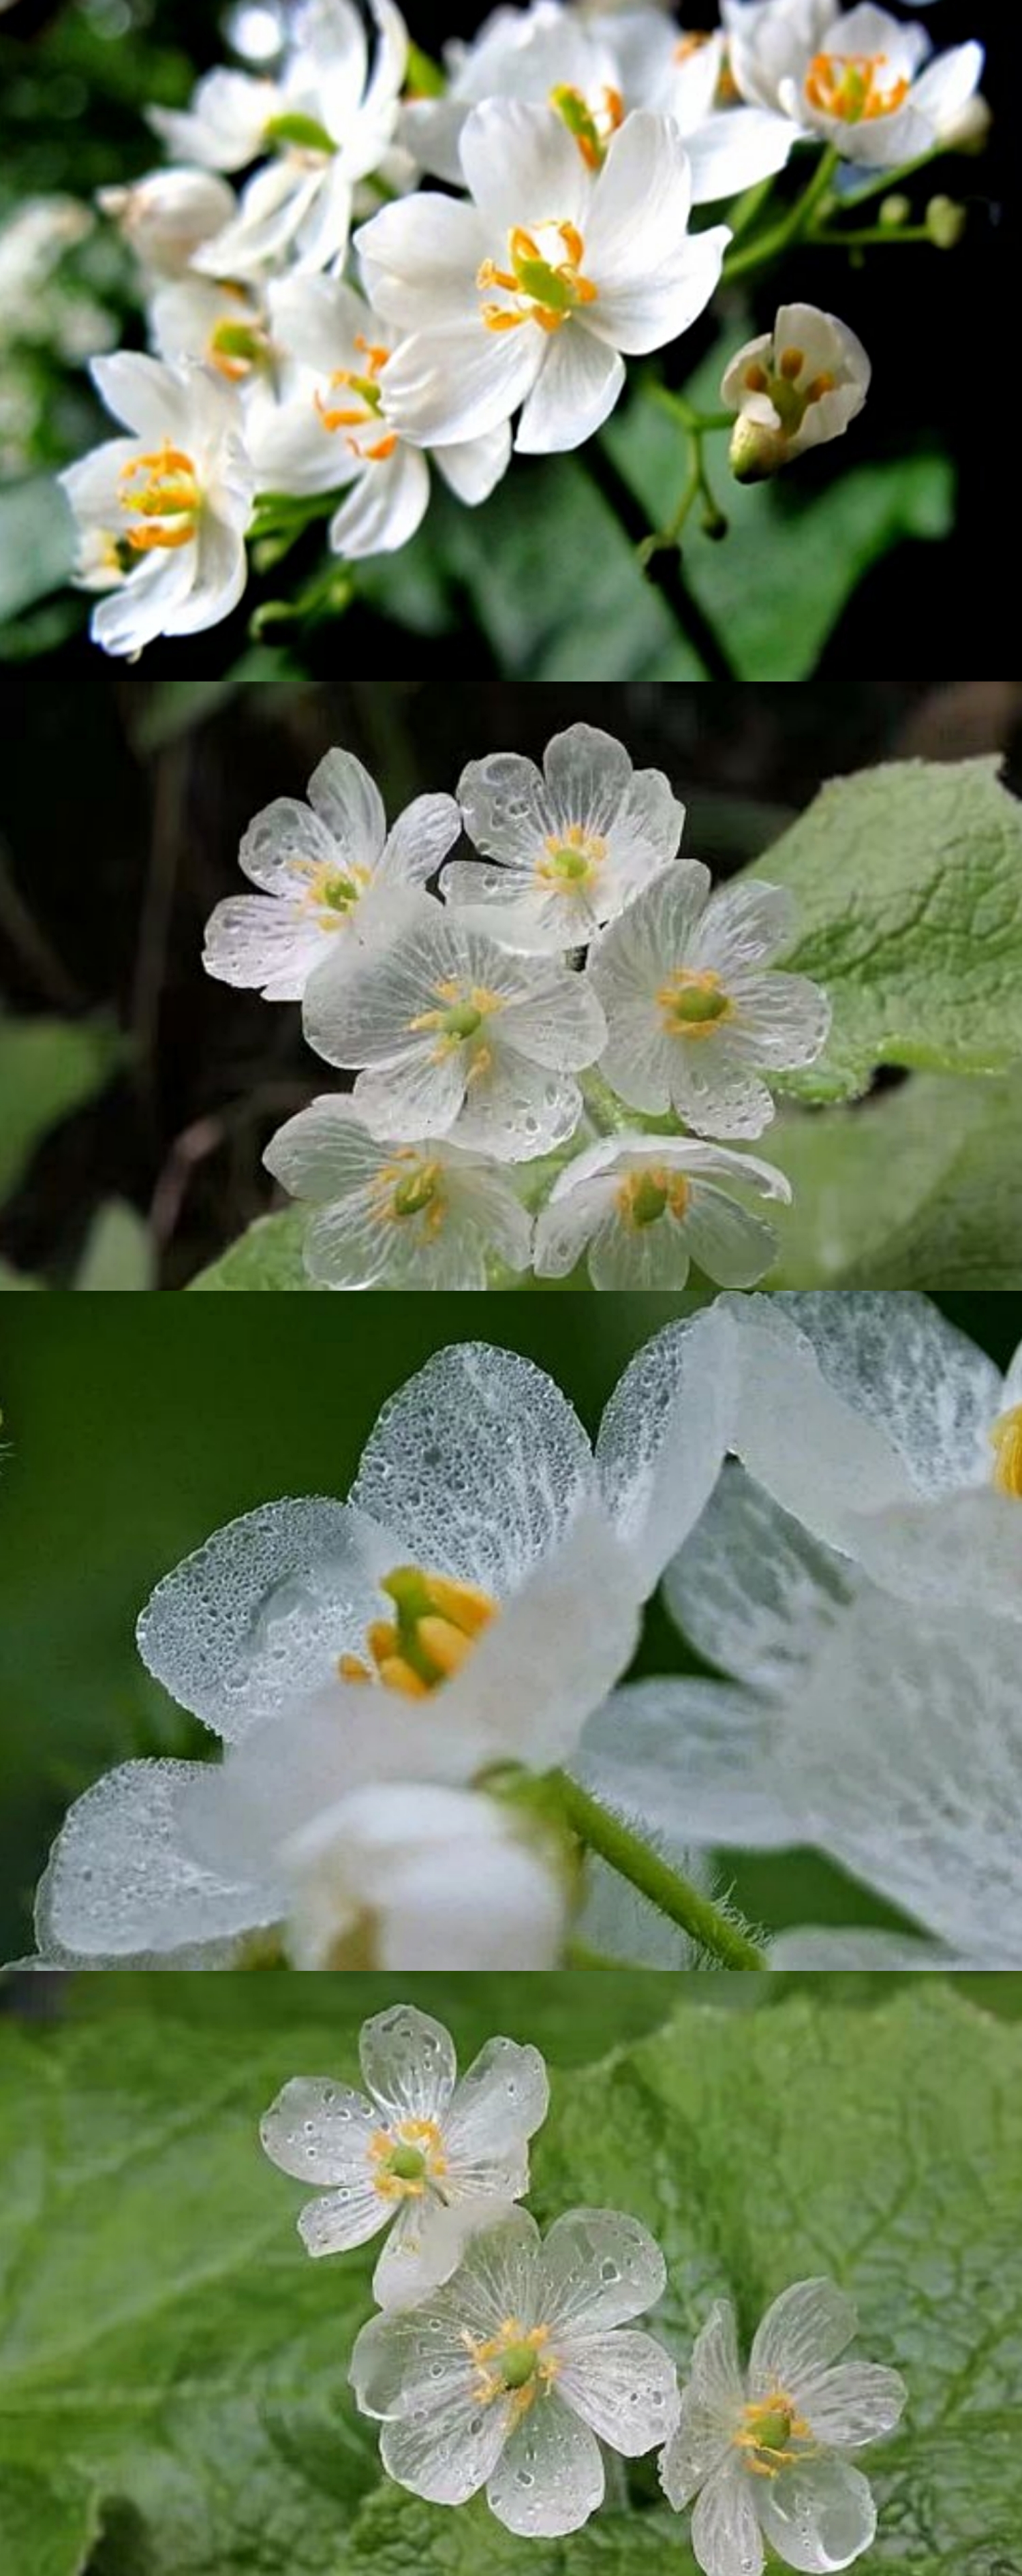 山荷叶花的正常颜色是白色的,在淋雨后或是洒水后就会变成透明的,非常